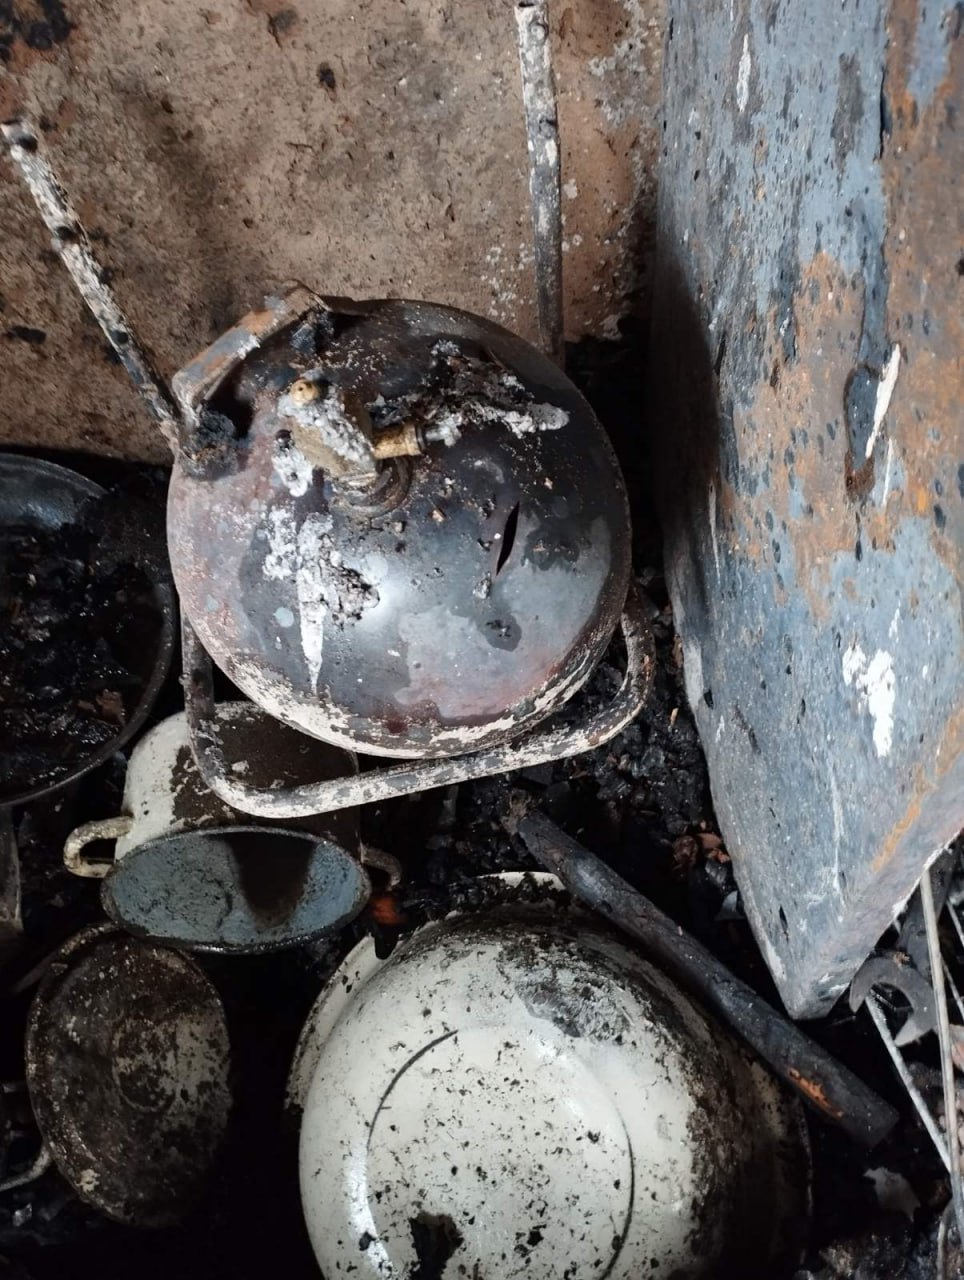 (ФОТО) В Единецком районе при пожаре в частном доме взорвался газовый баллон